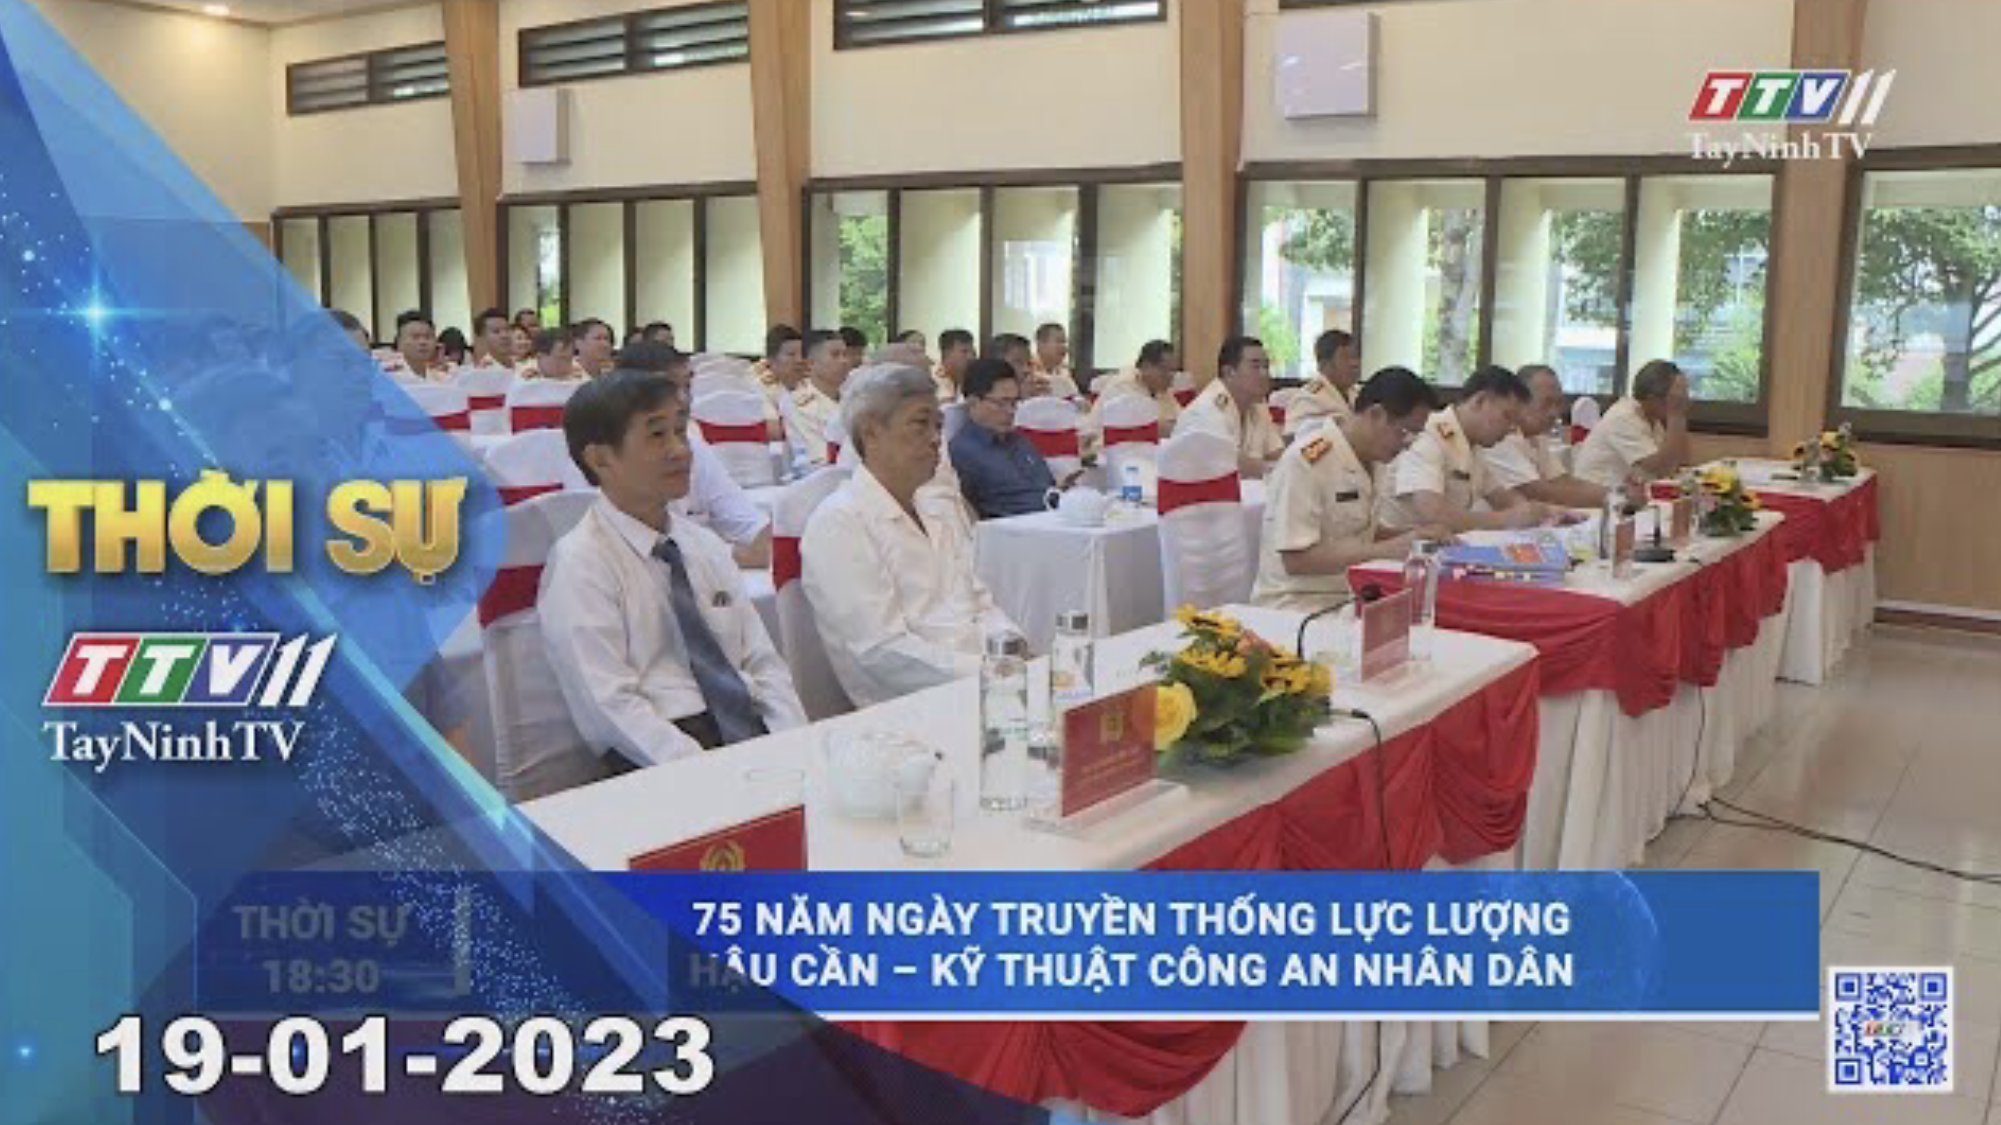 Thời sự Tây Ninh 19-01-2023 | Tin tức hôm nay | TayNinhTV